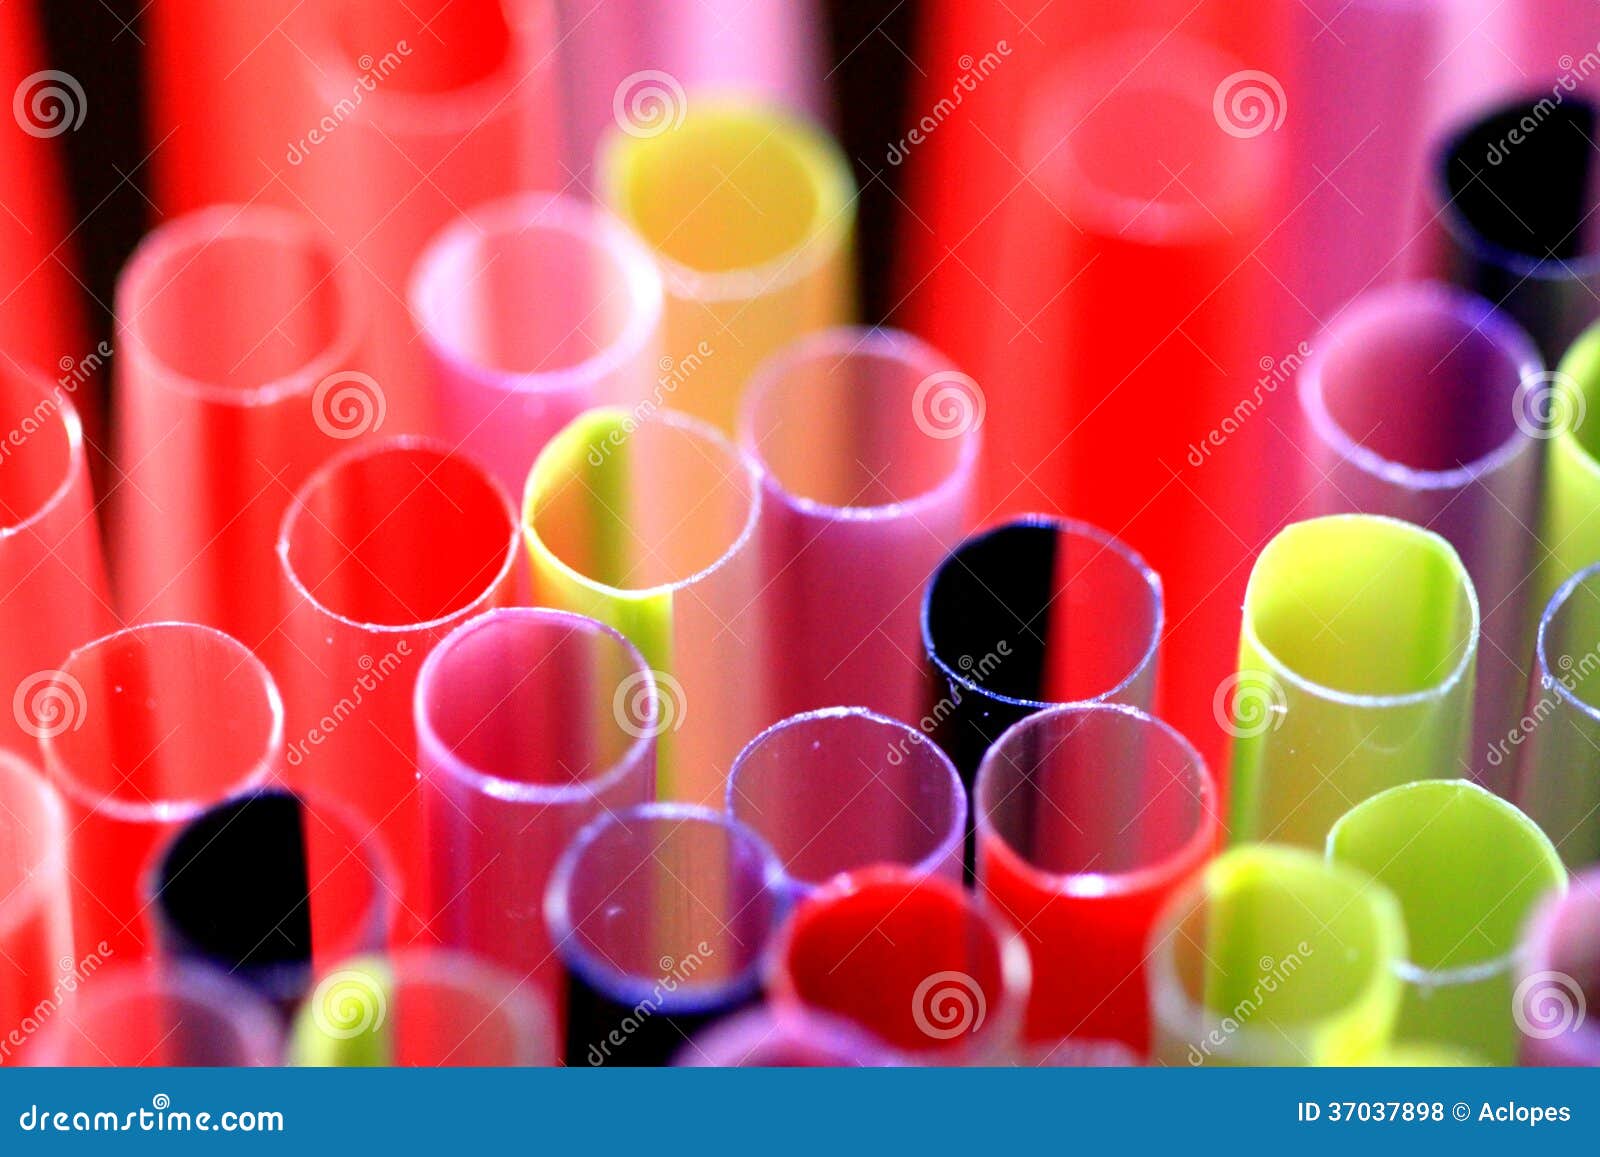 tubos coloridos